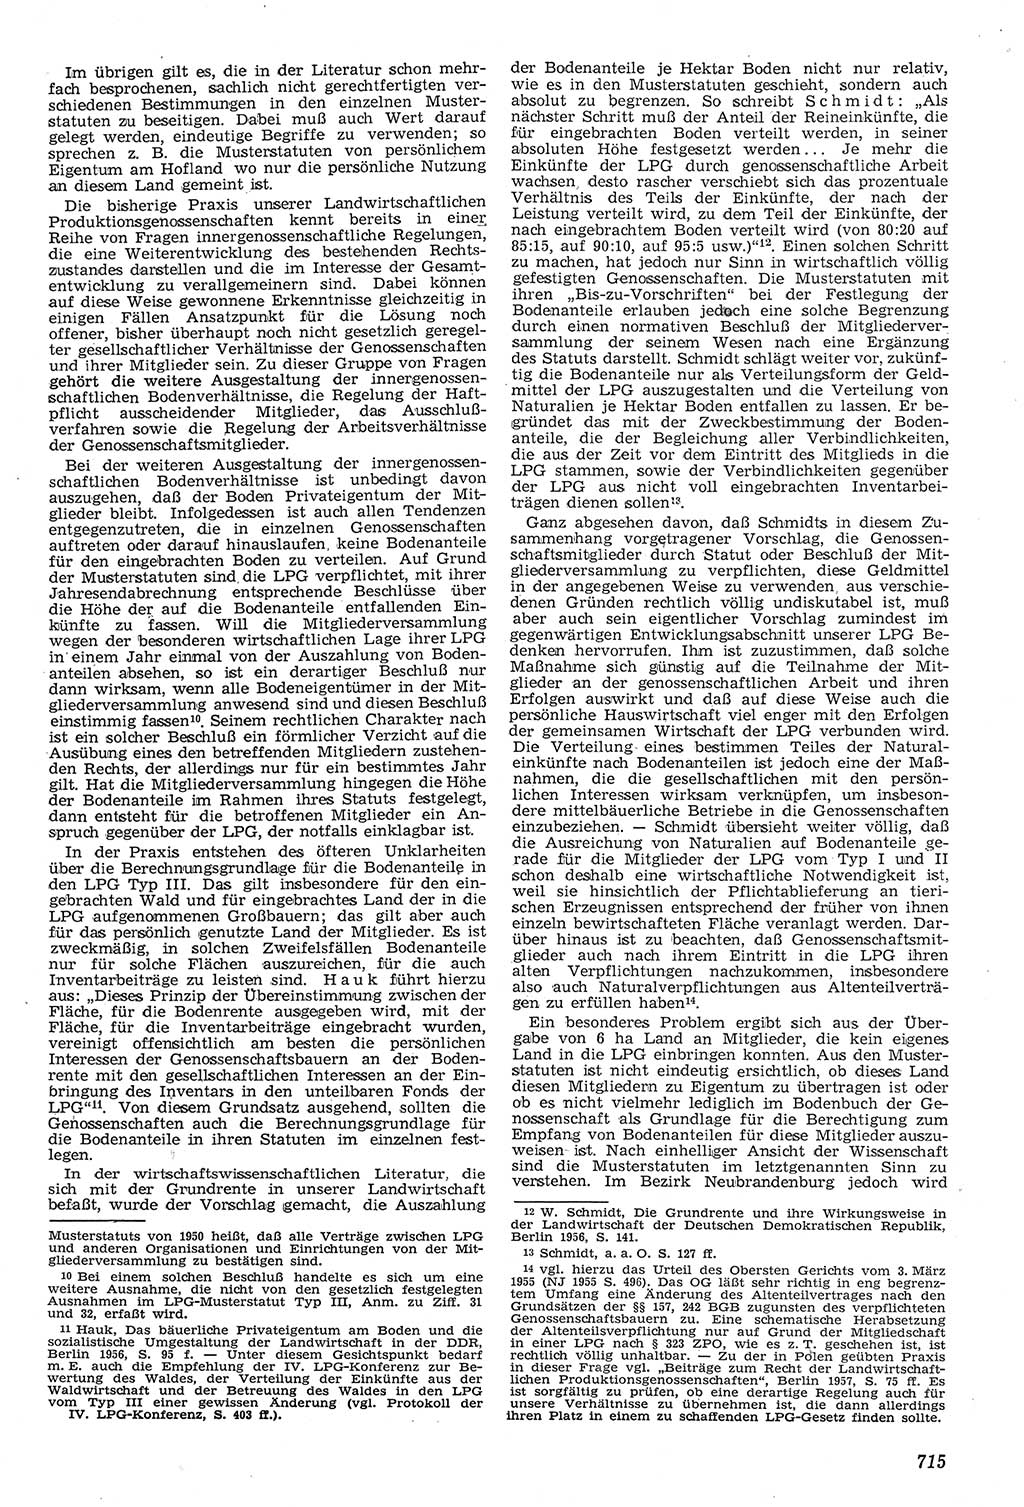 Neue Justiz (NJ), Zeitschrift für Recht und Rechtswissenschaft [Deutsche Demokratische Republik (DDR)], 11. Jahrgang 1957, Seite 715 (NJ DDR 1957, S. 715)